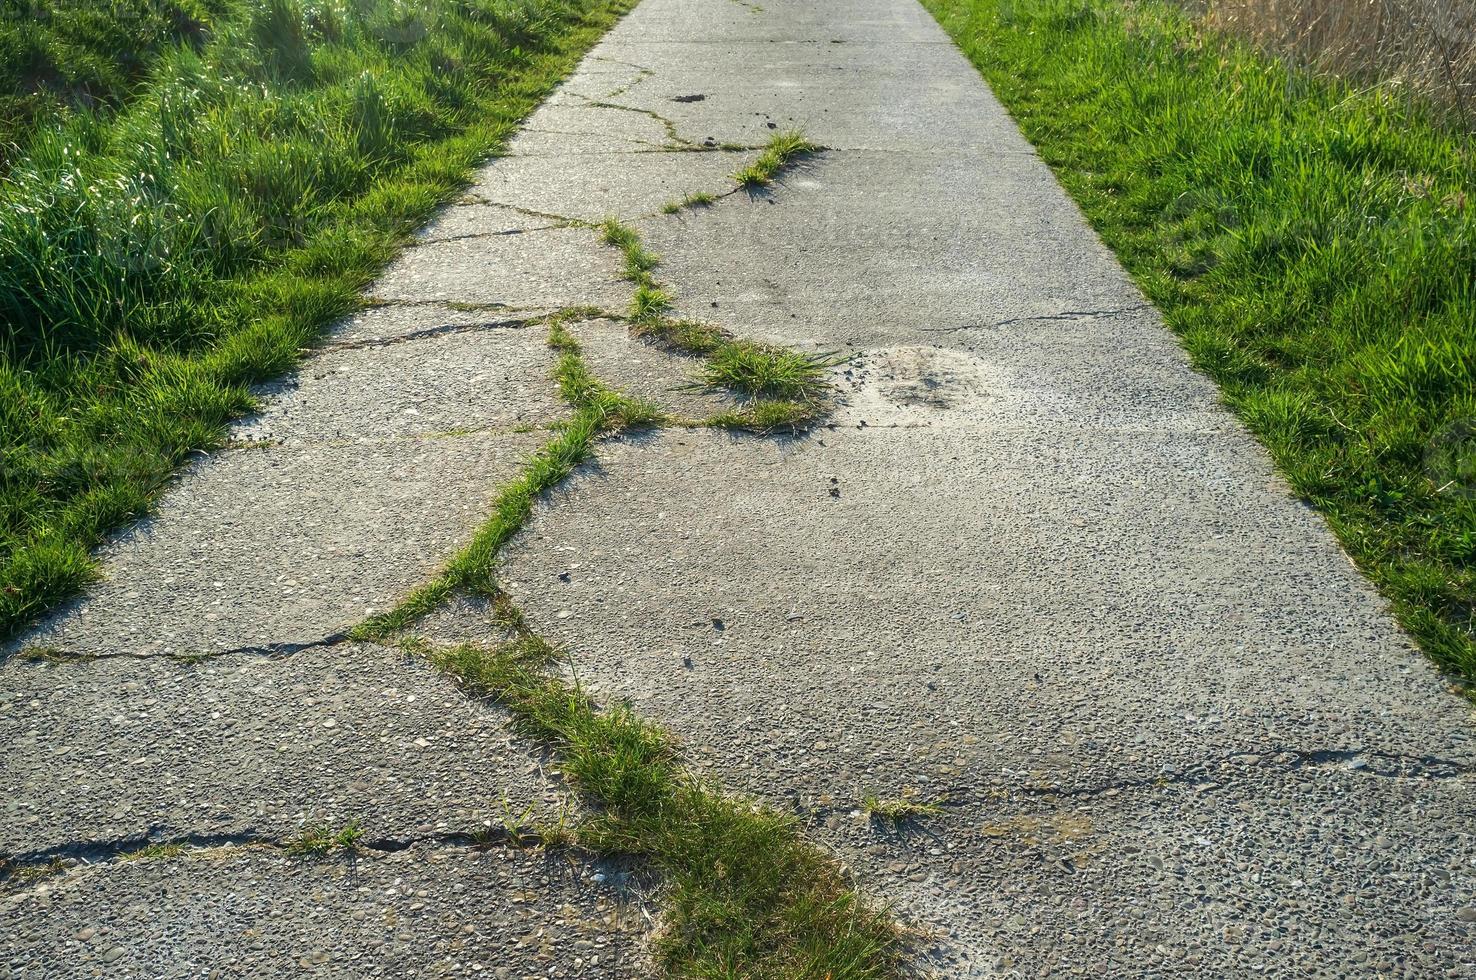 ancien chemin en béton avec des fissures et envahi par l'herbe, utilisé pour le vélo ou la marche. photo